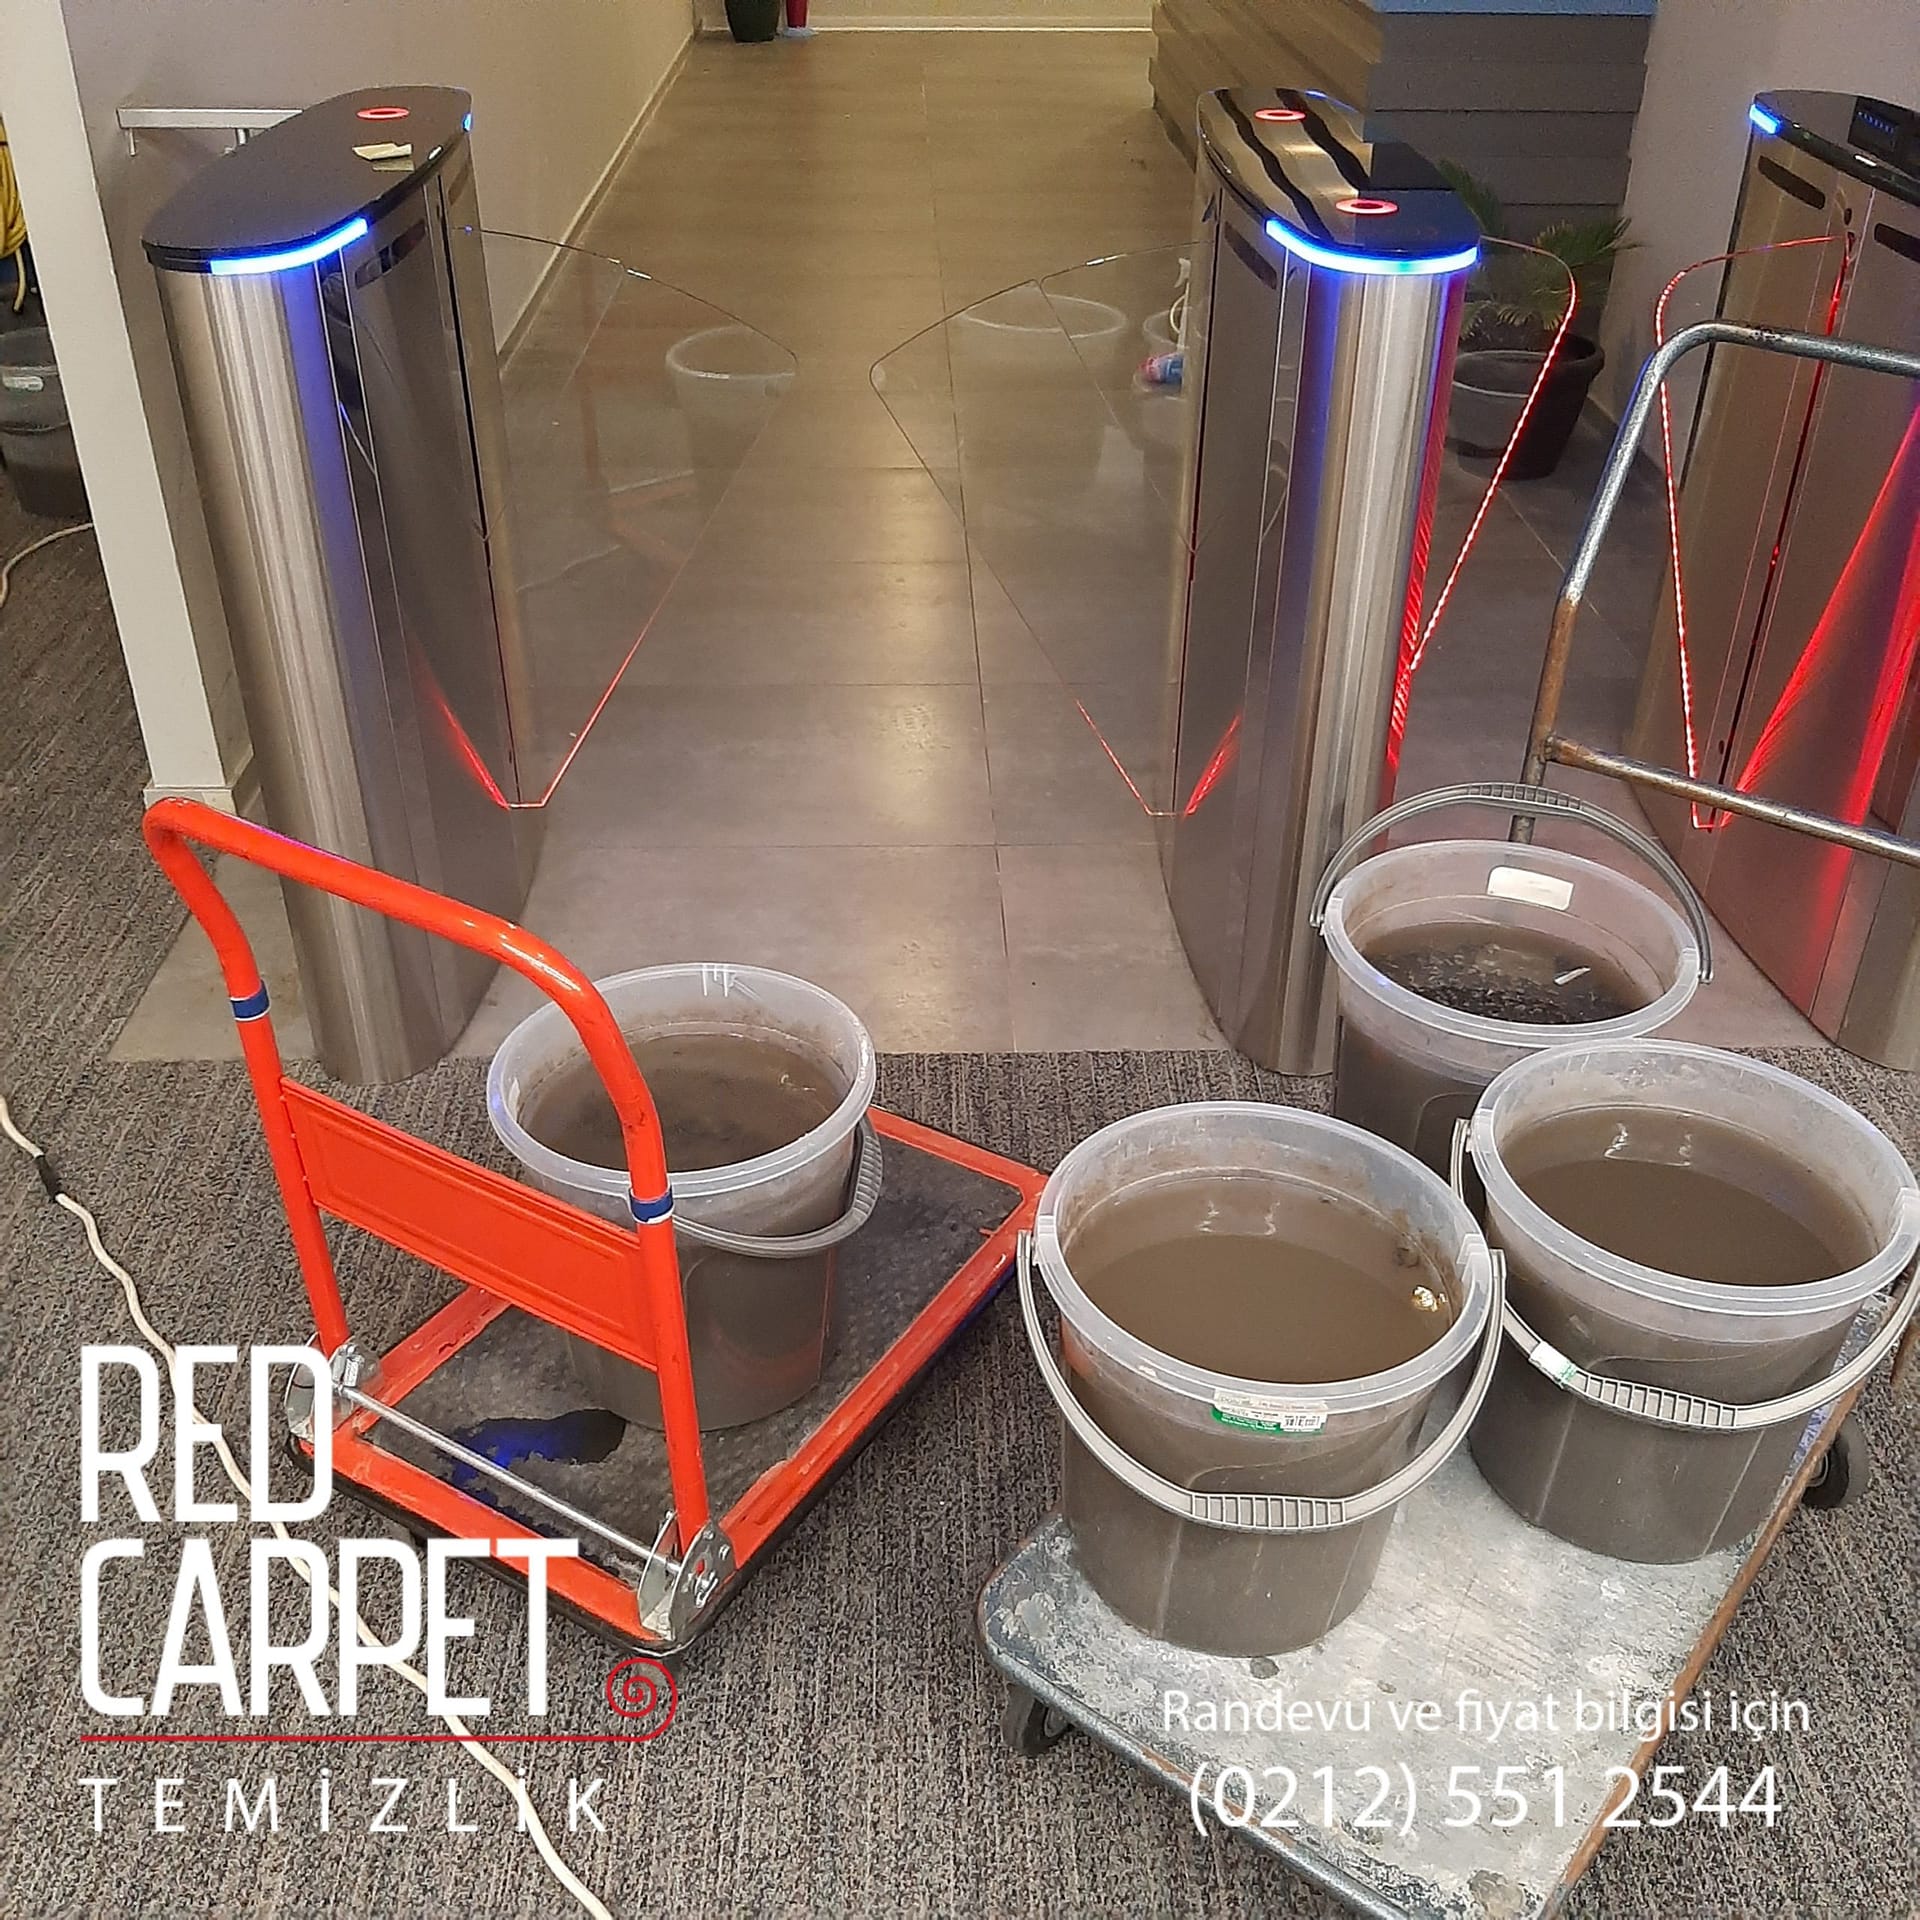 Red Carpet Temizlik’in Yerinde Halı Yıkama Hizmetine Genel Bakış